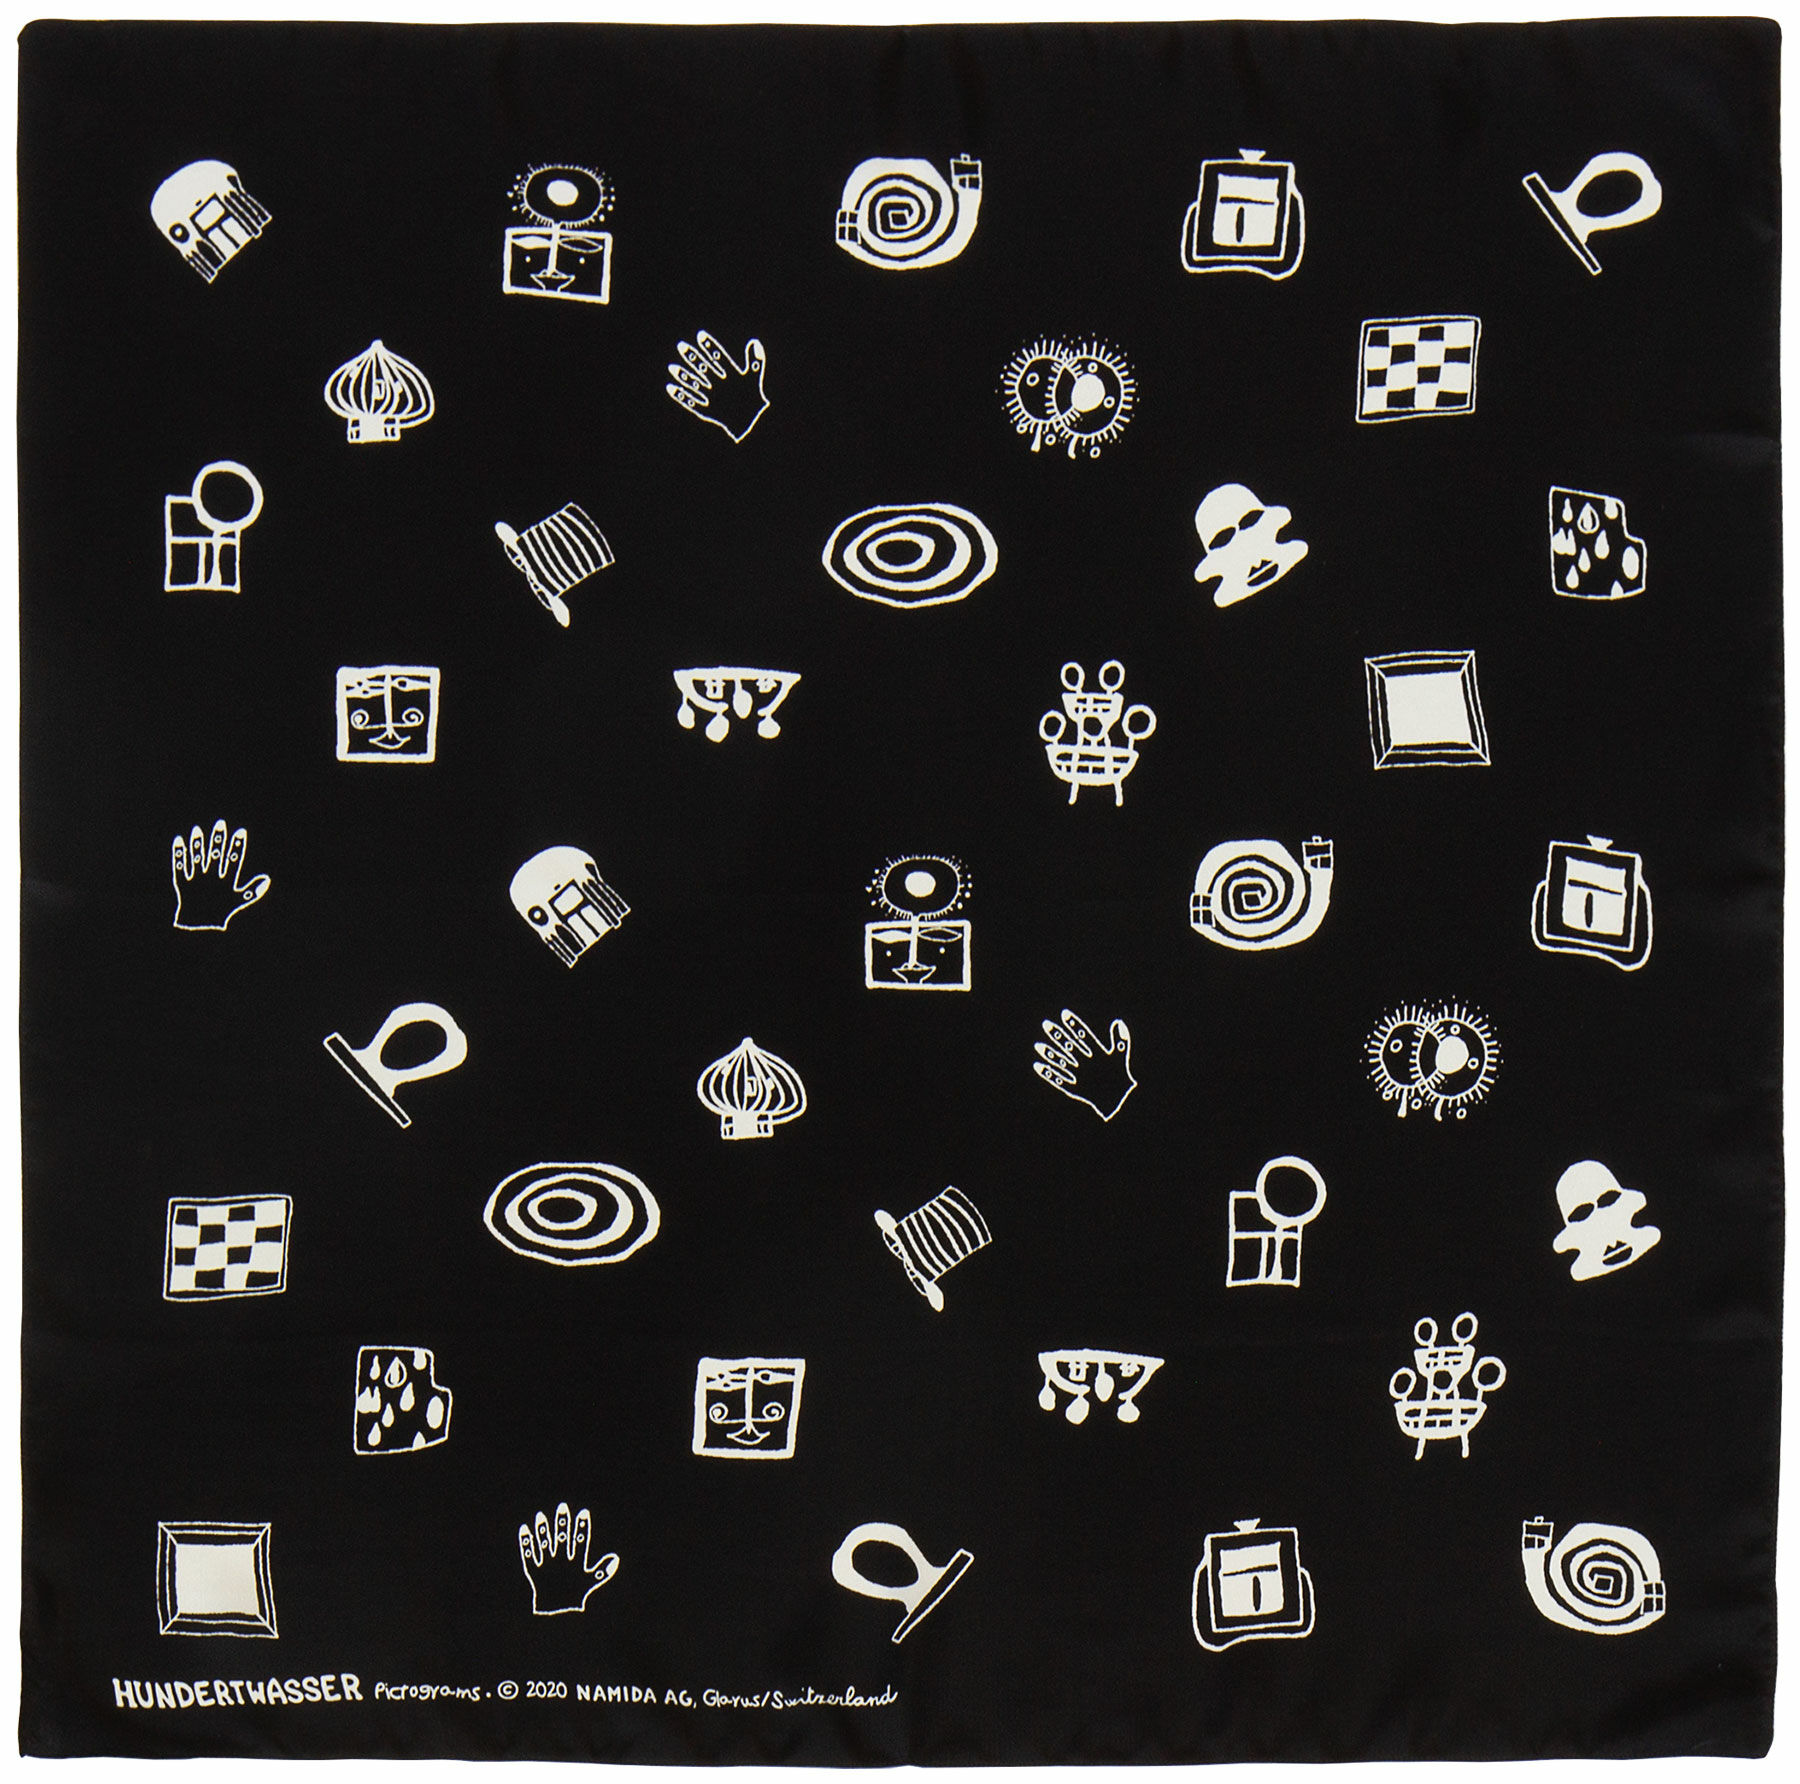 Foulard de soie "Jardin des signes" (1994) von Friedensreich Hundertwasser